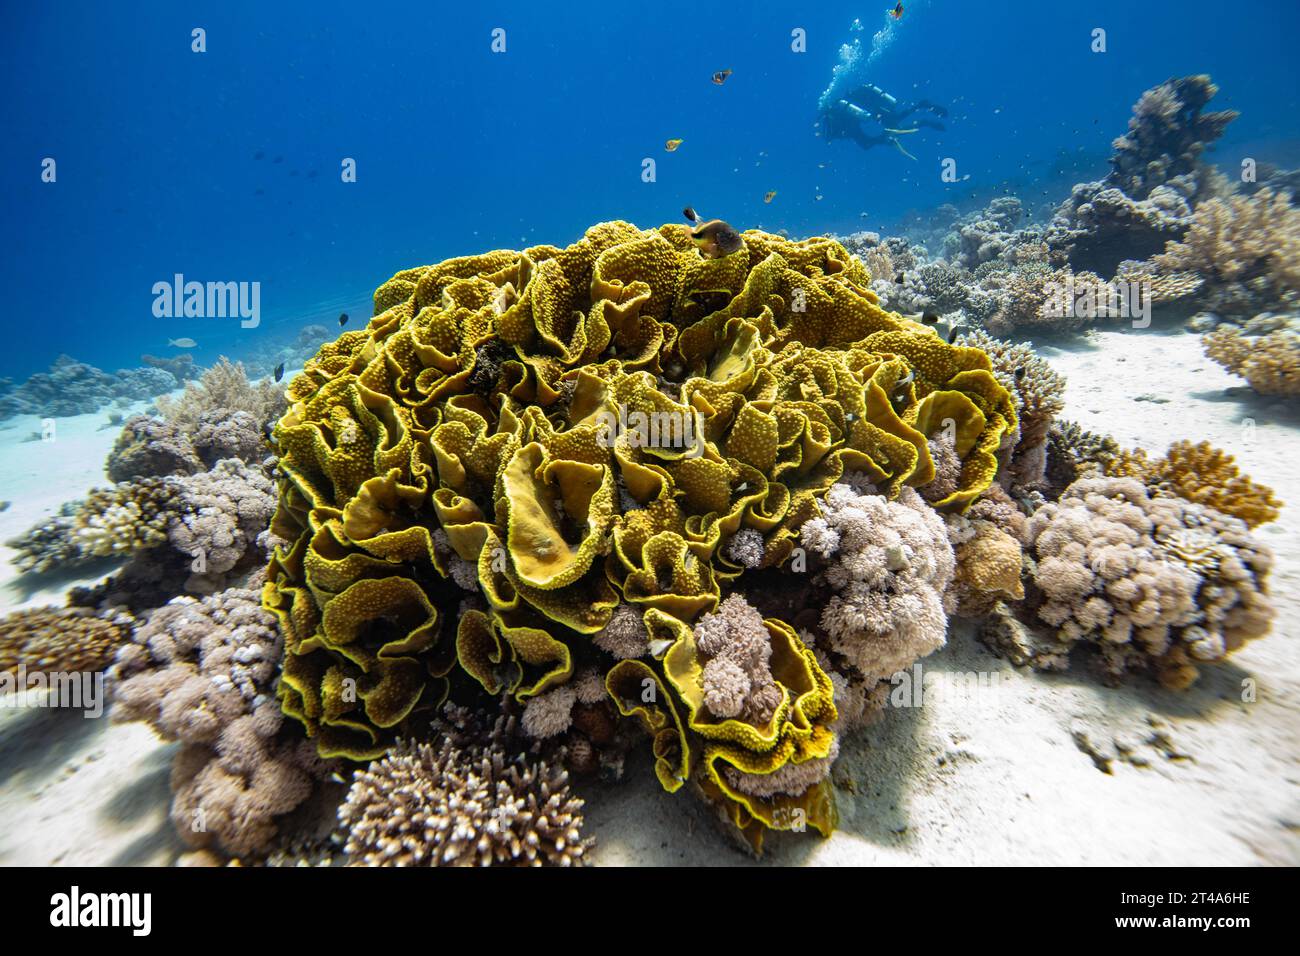 Grand corail de laitue jaune, Turbinaria mesenterina, avec des plongeurs nageant à travers le récif en arrière-plan Banque D'Images